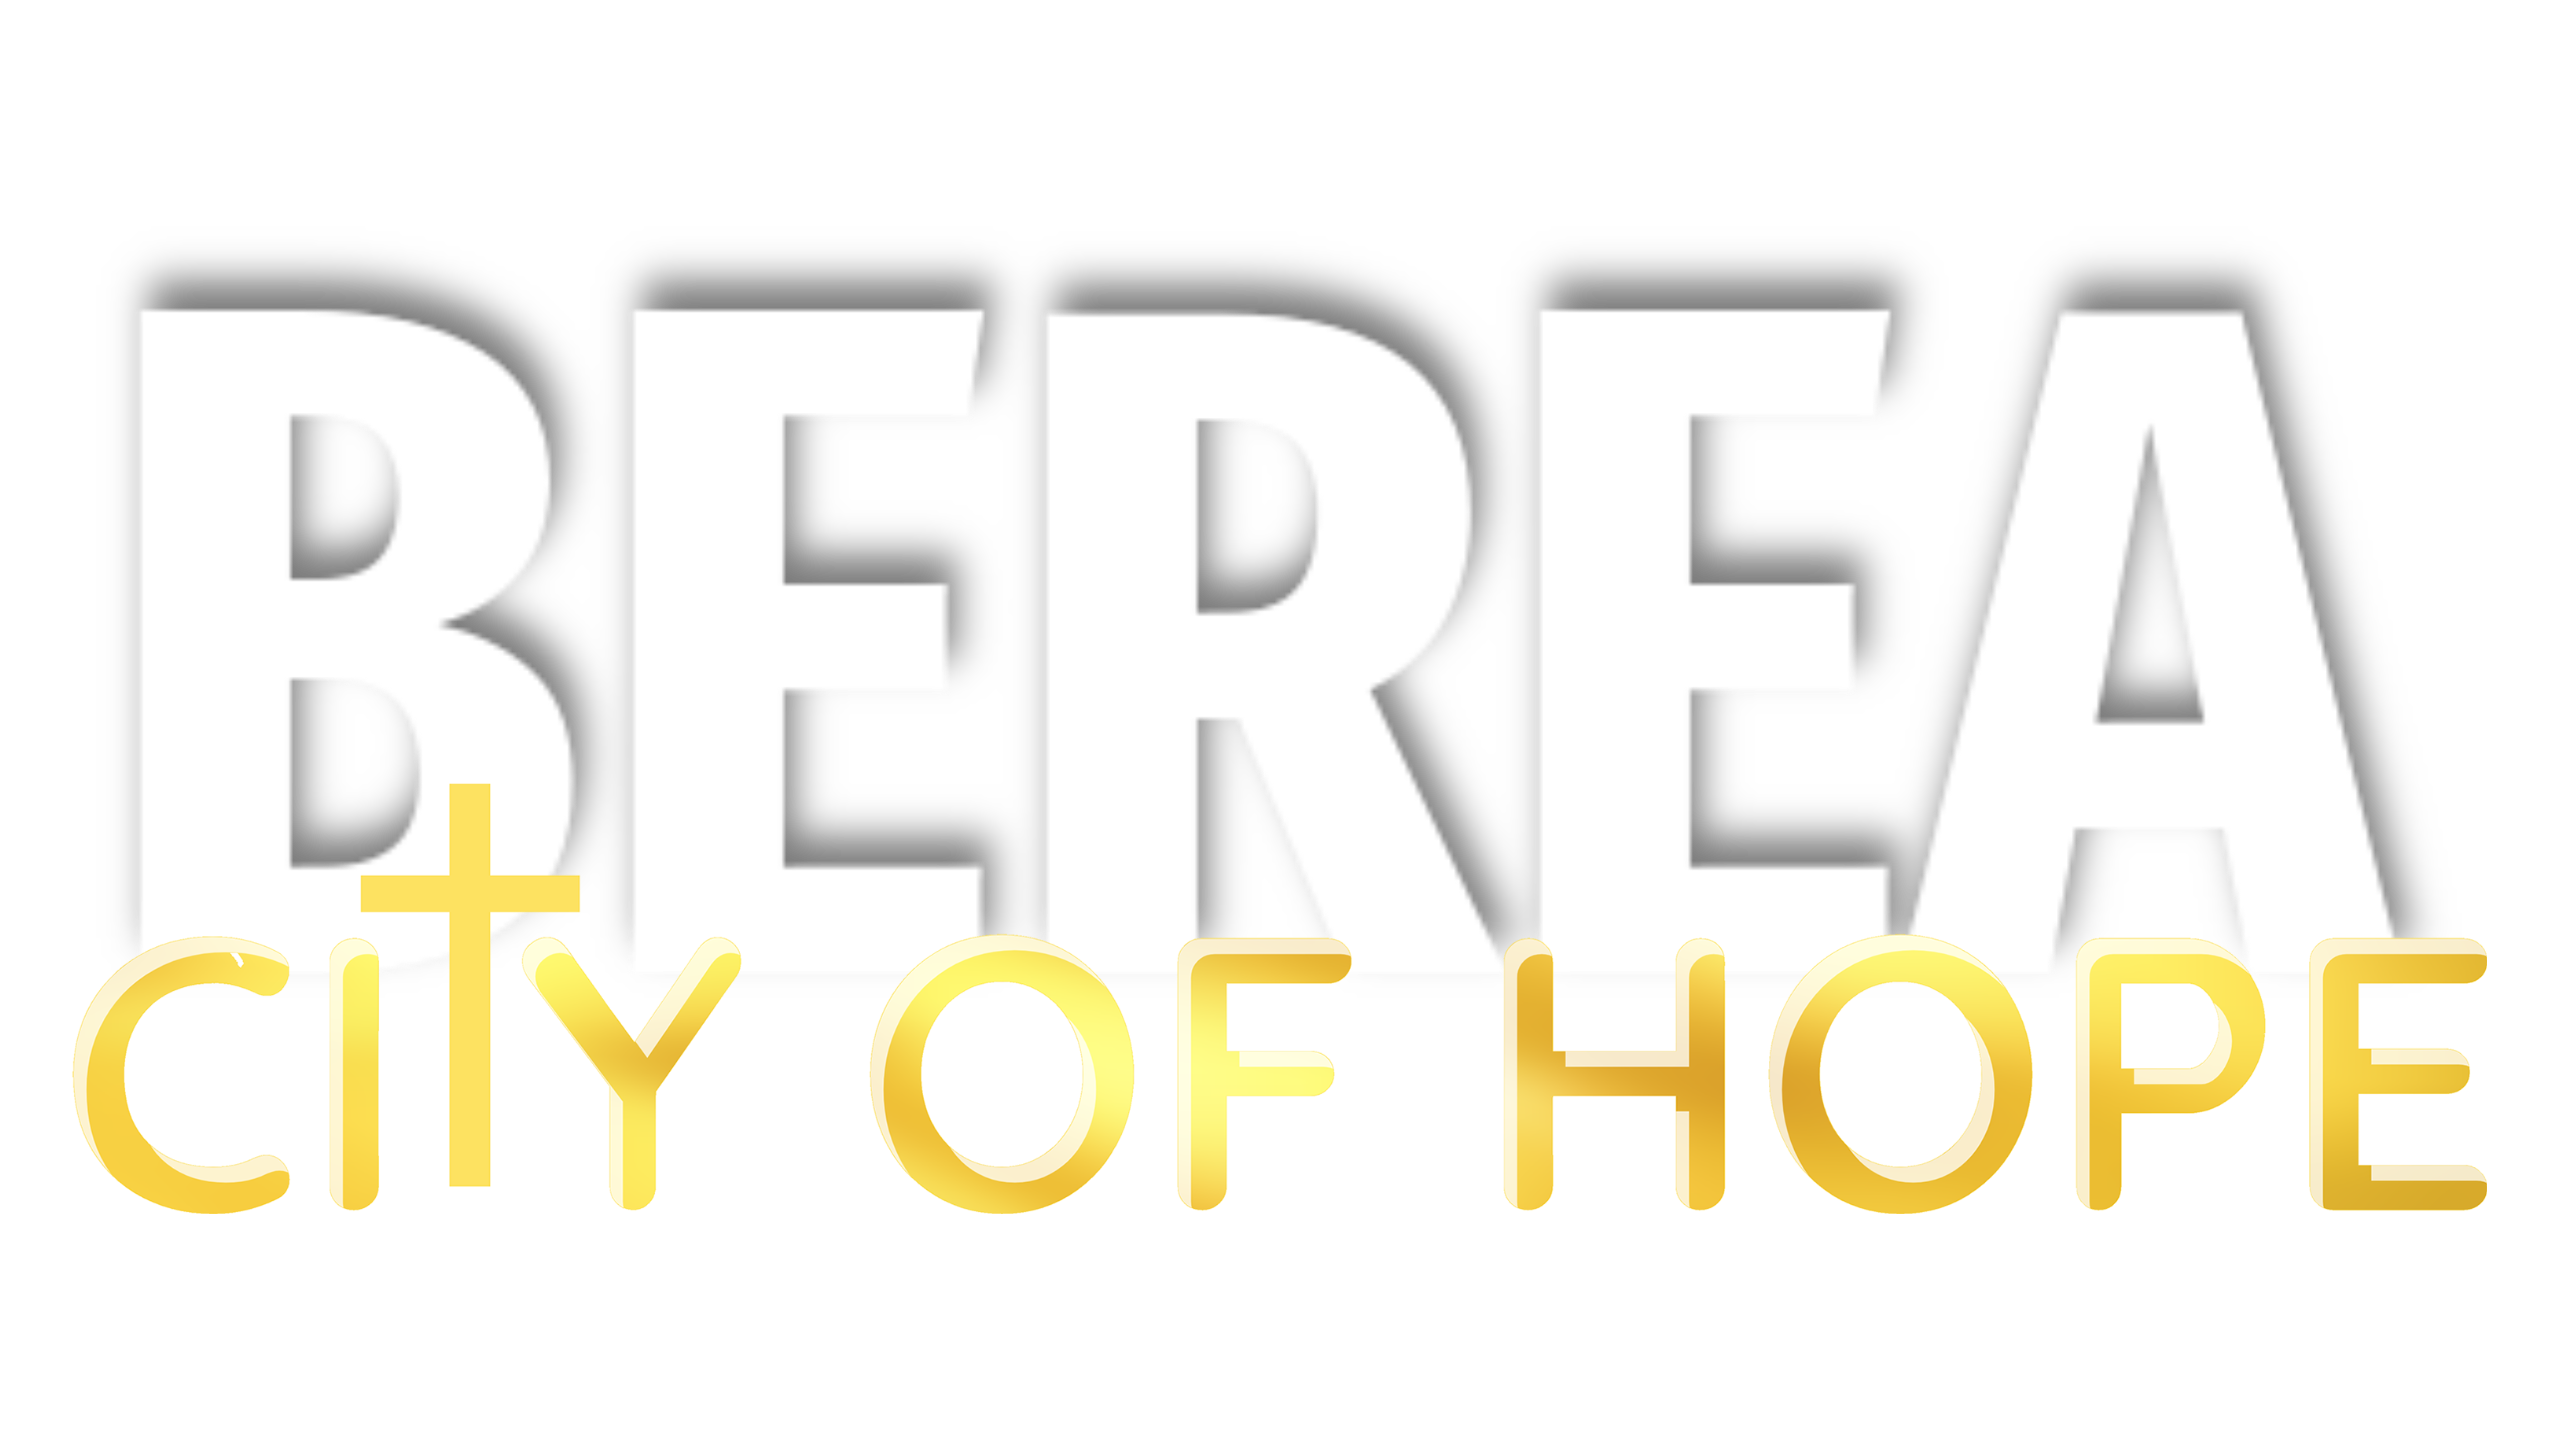 Berea City Of Hope